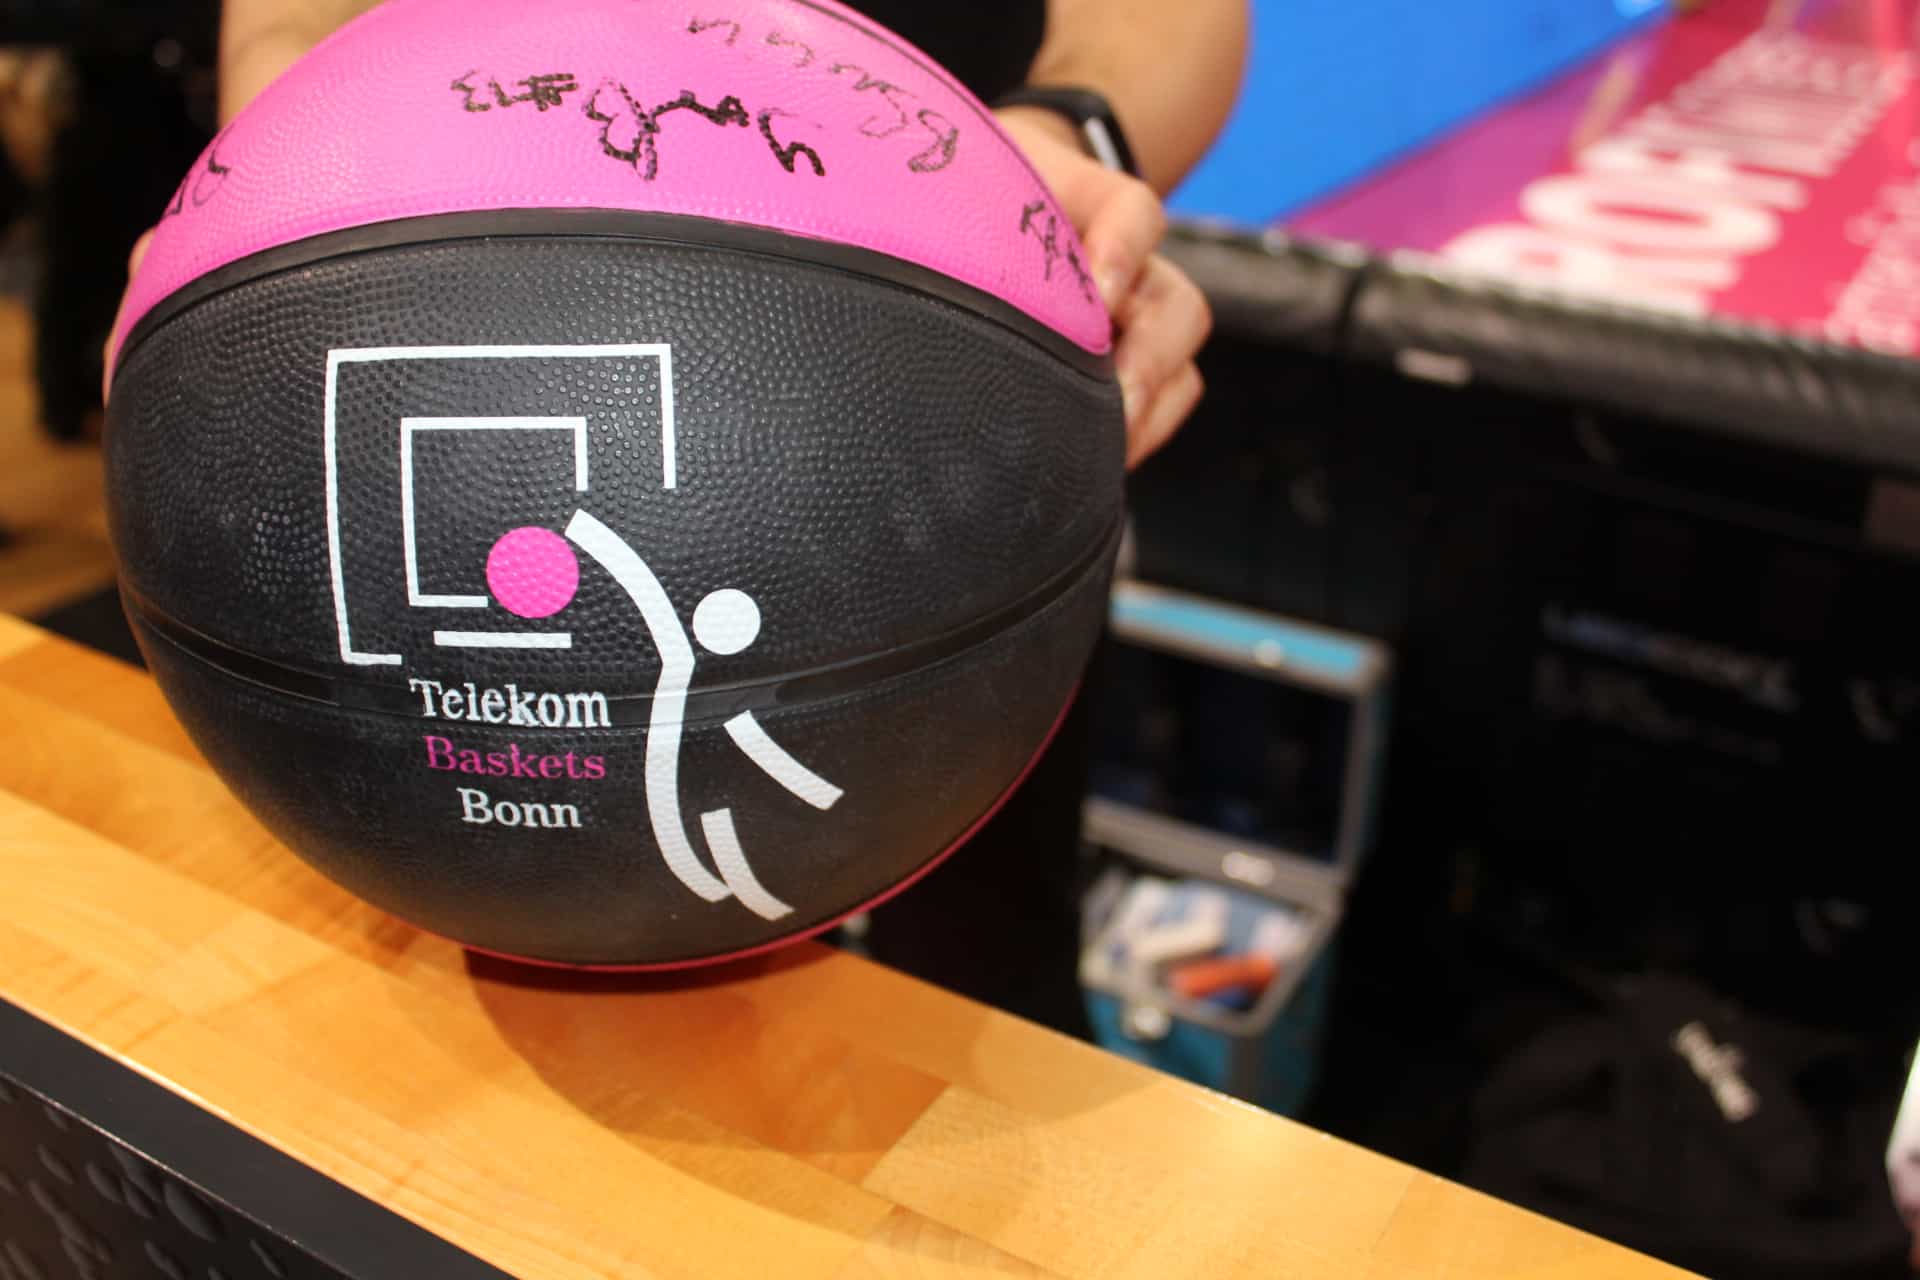 Unterschriebener Basketball der Telekom Baskets Bonn